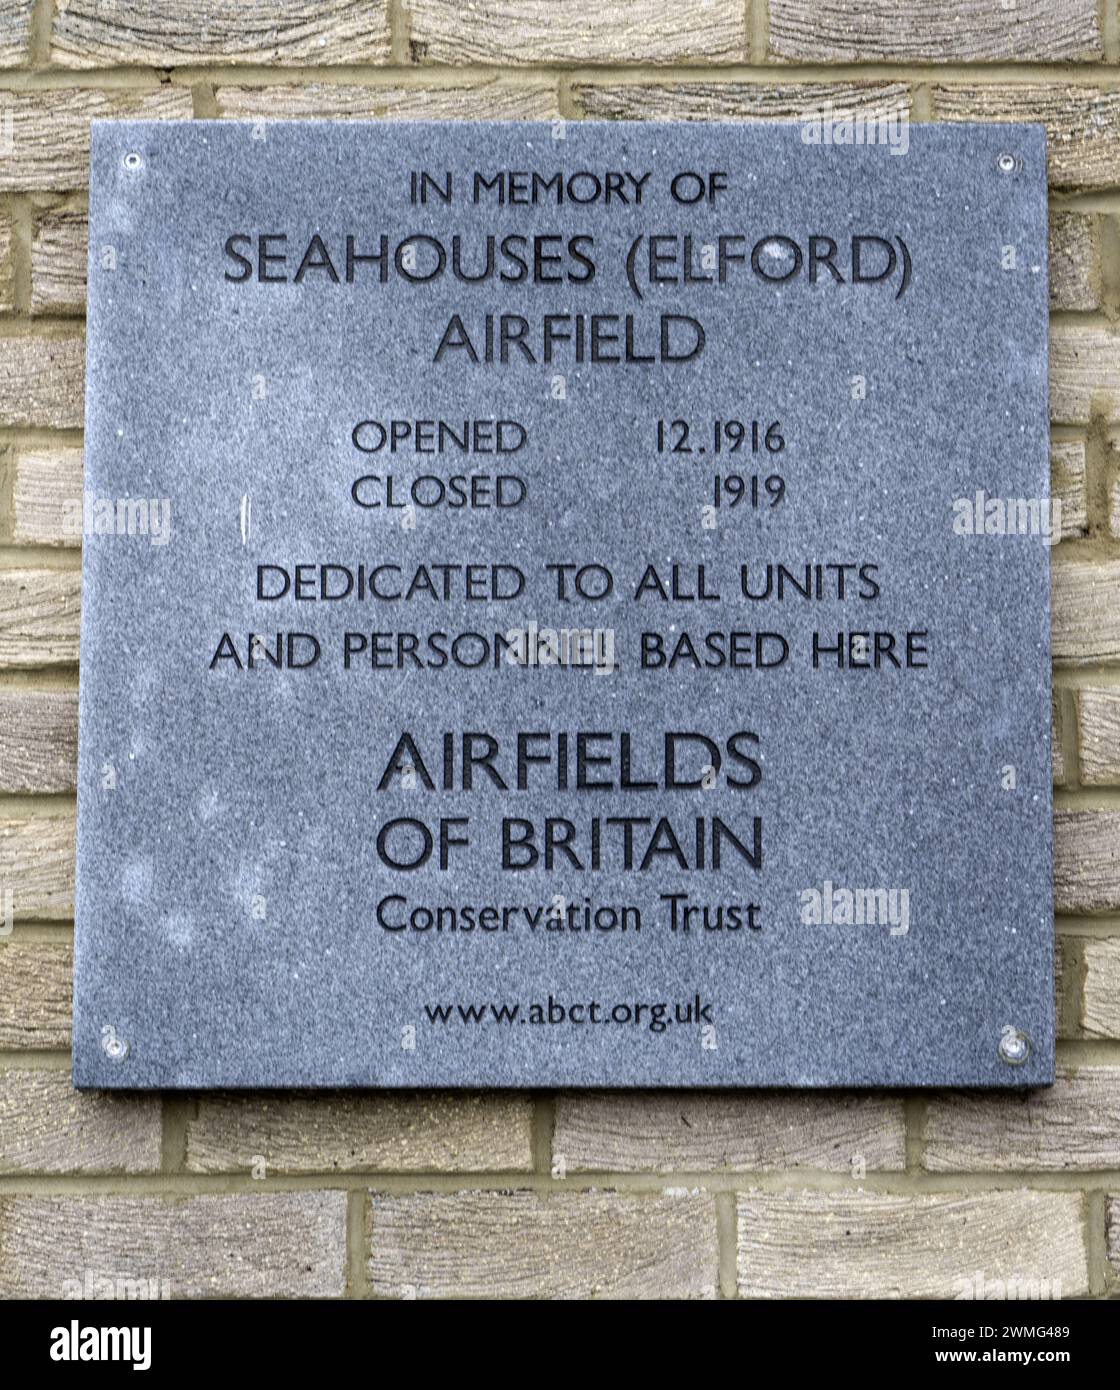 Targa commemorativa presso l'ex Seahouses (Elford) Airfield, Seahouses, Northumberland, Inghilterra, Regno Unito - eretta dagli aeroporti della Britain Conservation Trust Foto Stock